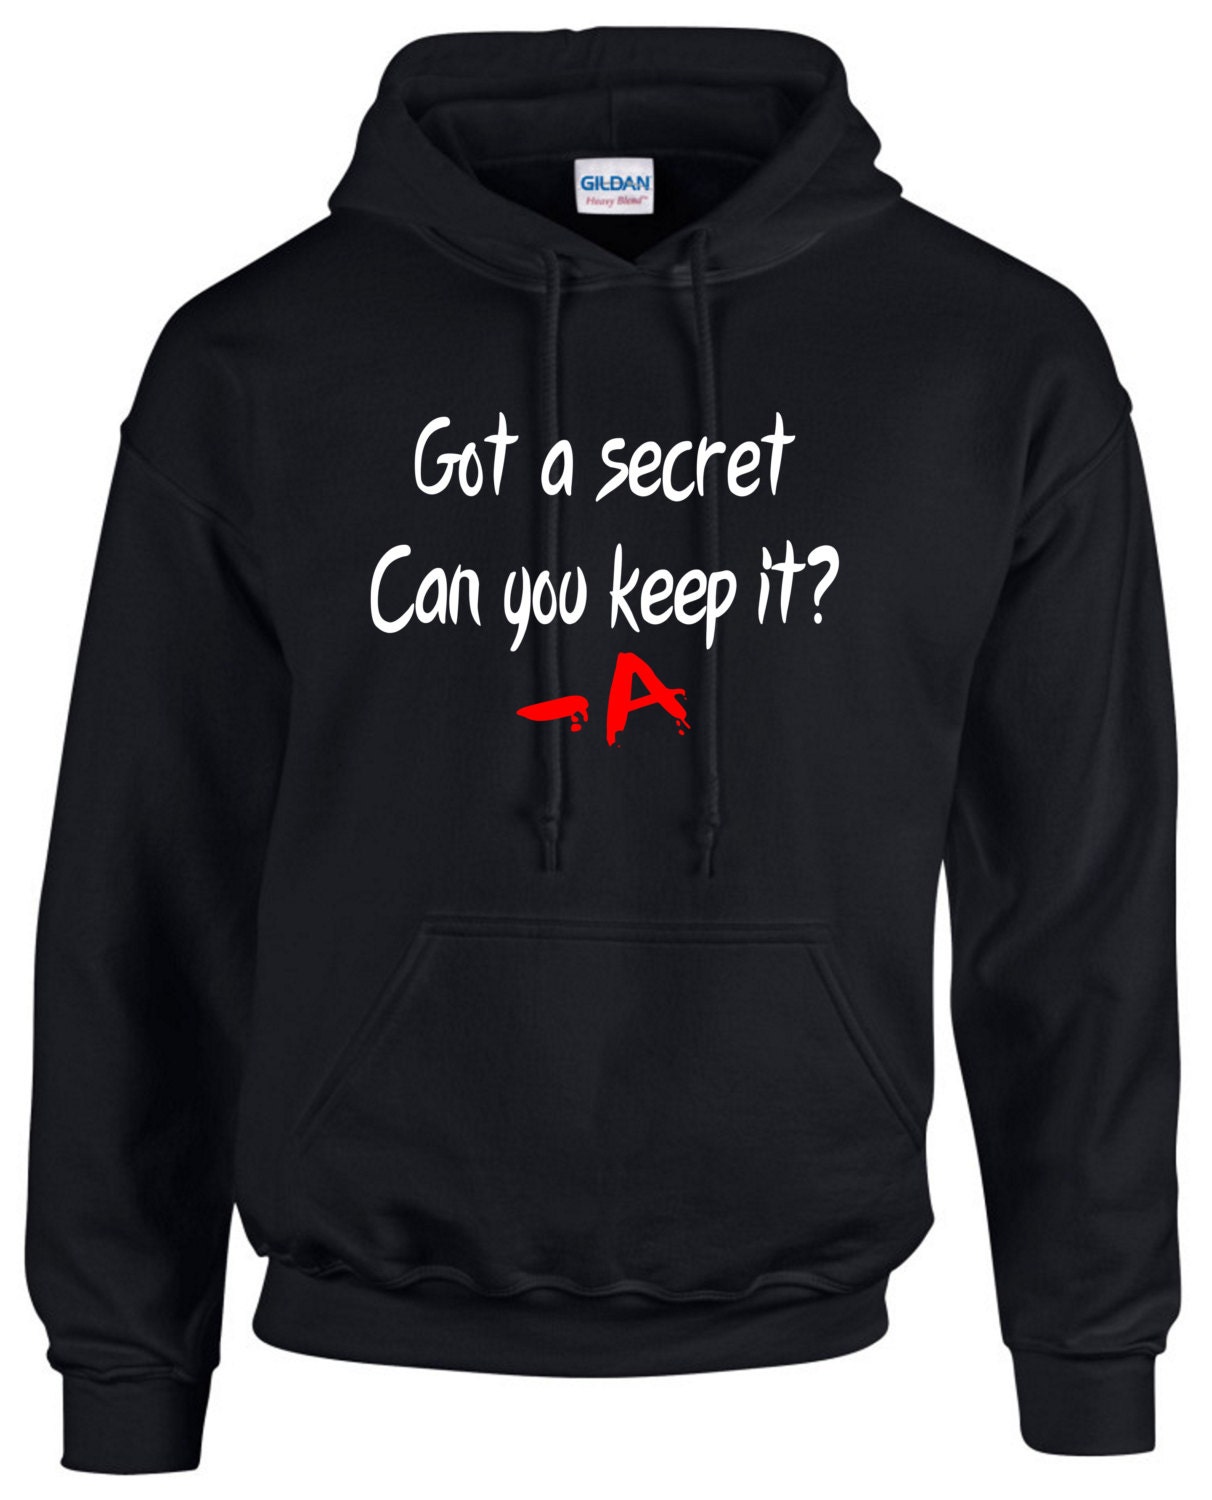 keep it like a secret sweatshirt